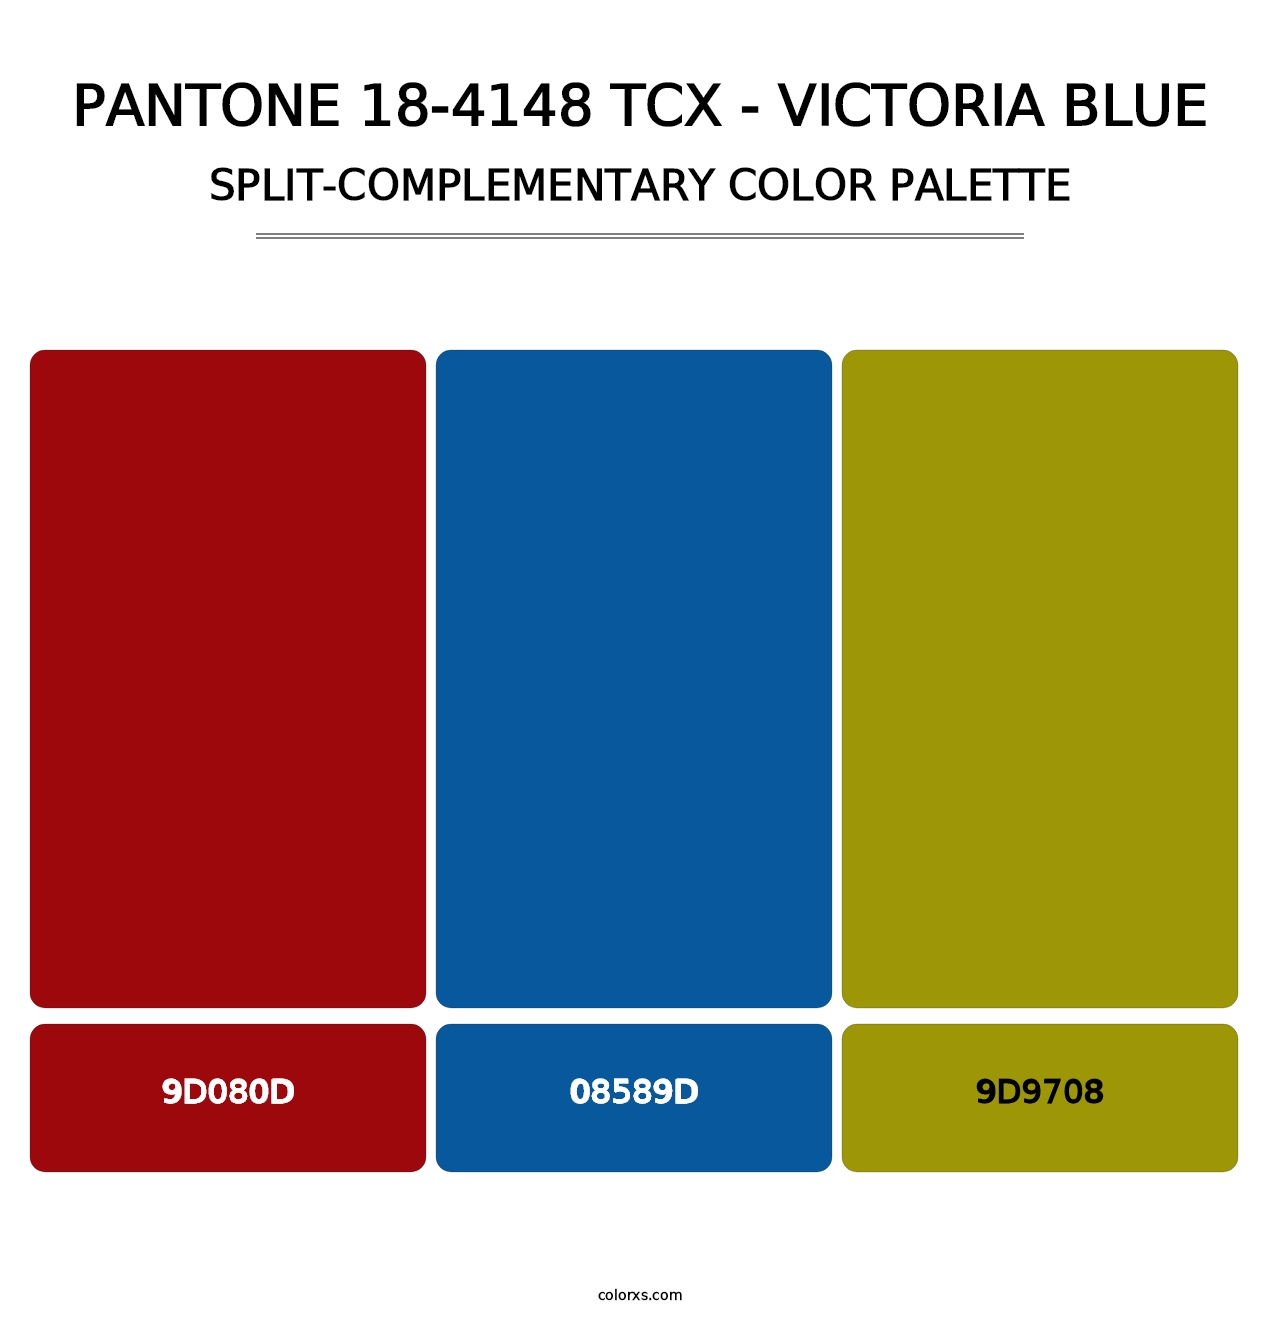 PANTONE 18-4148 TCX - Victoria Blue - Split-Complementary Color Palette